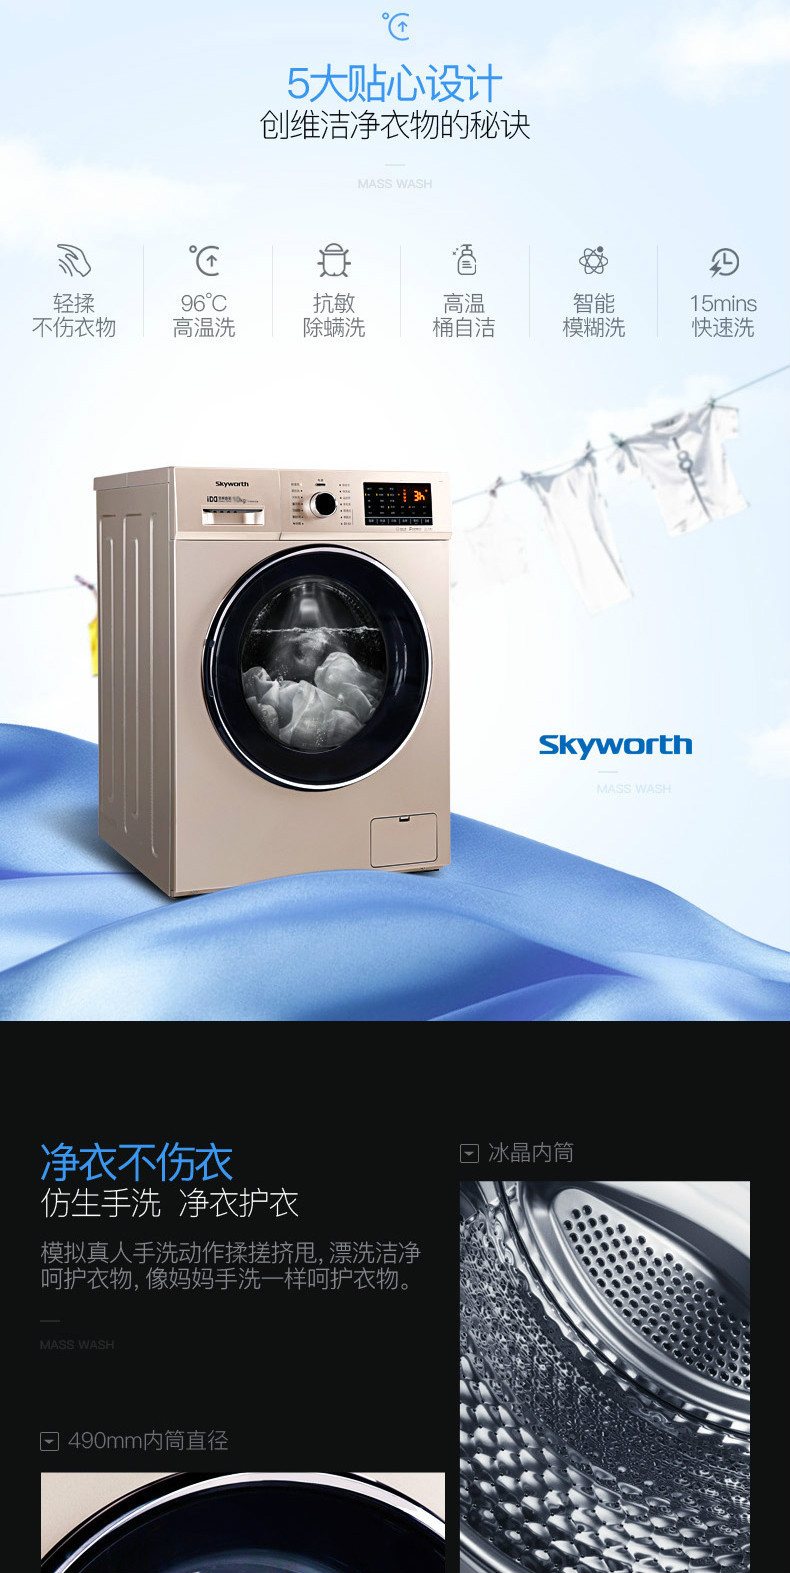 【赣州馆】Skyworth/创维 F901411LCHiA 炫金 9公斤变频滚筒洗衣机